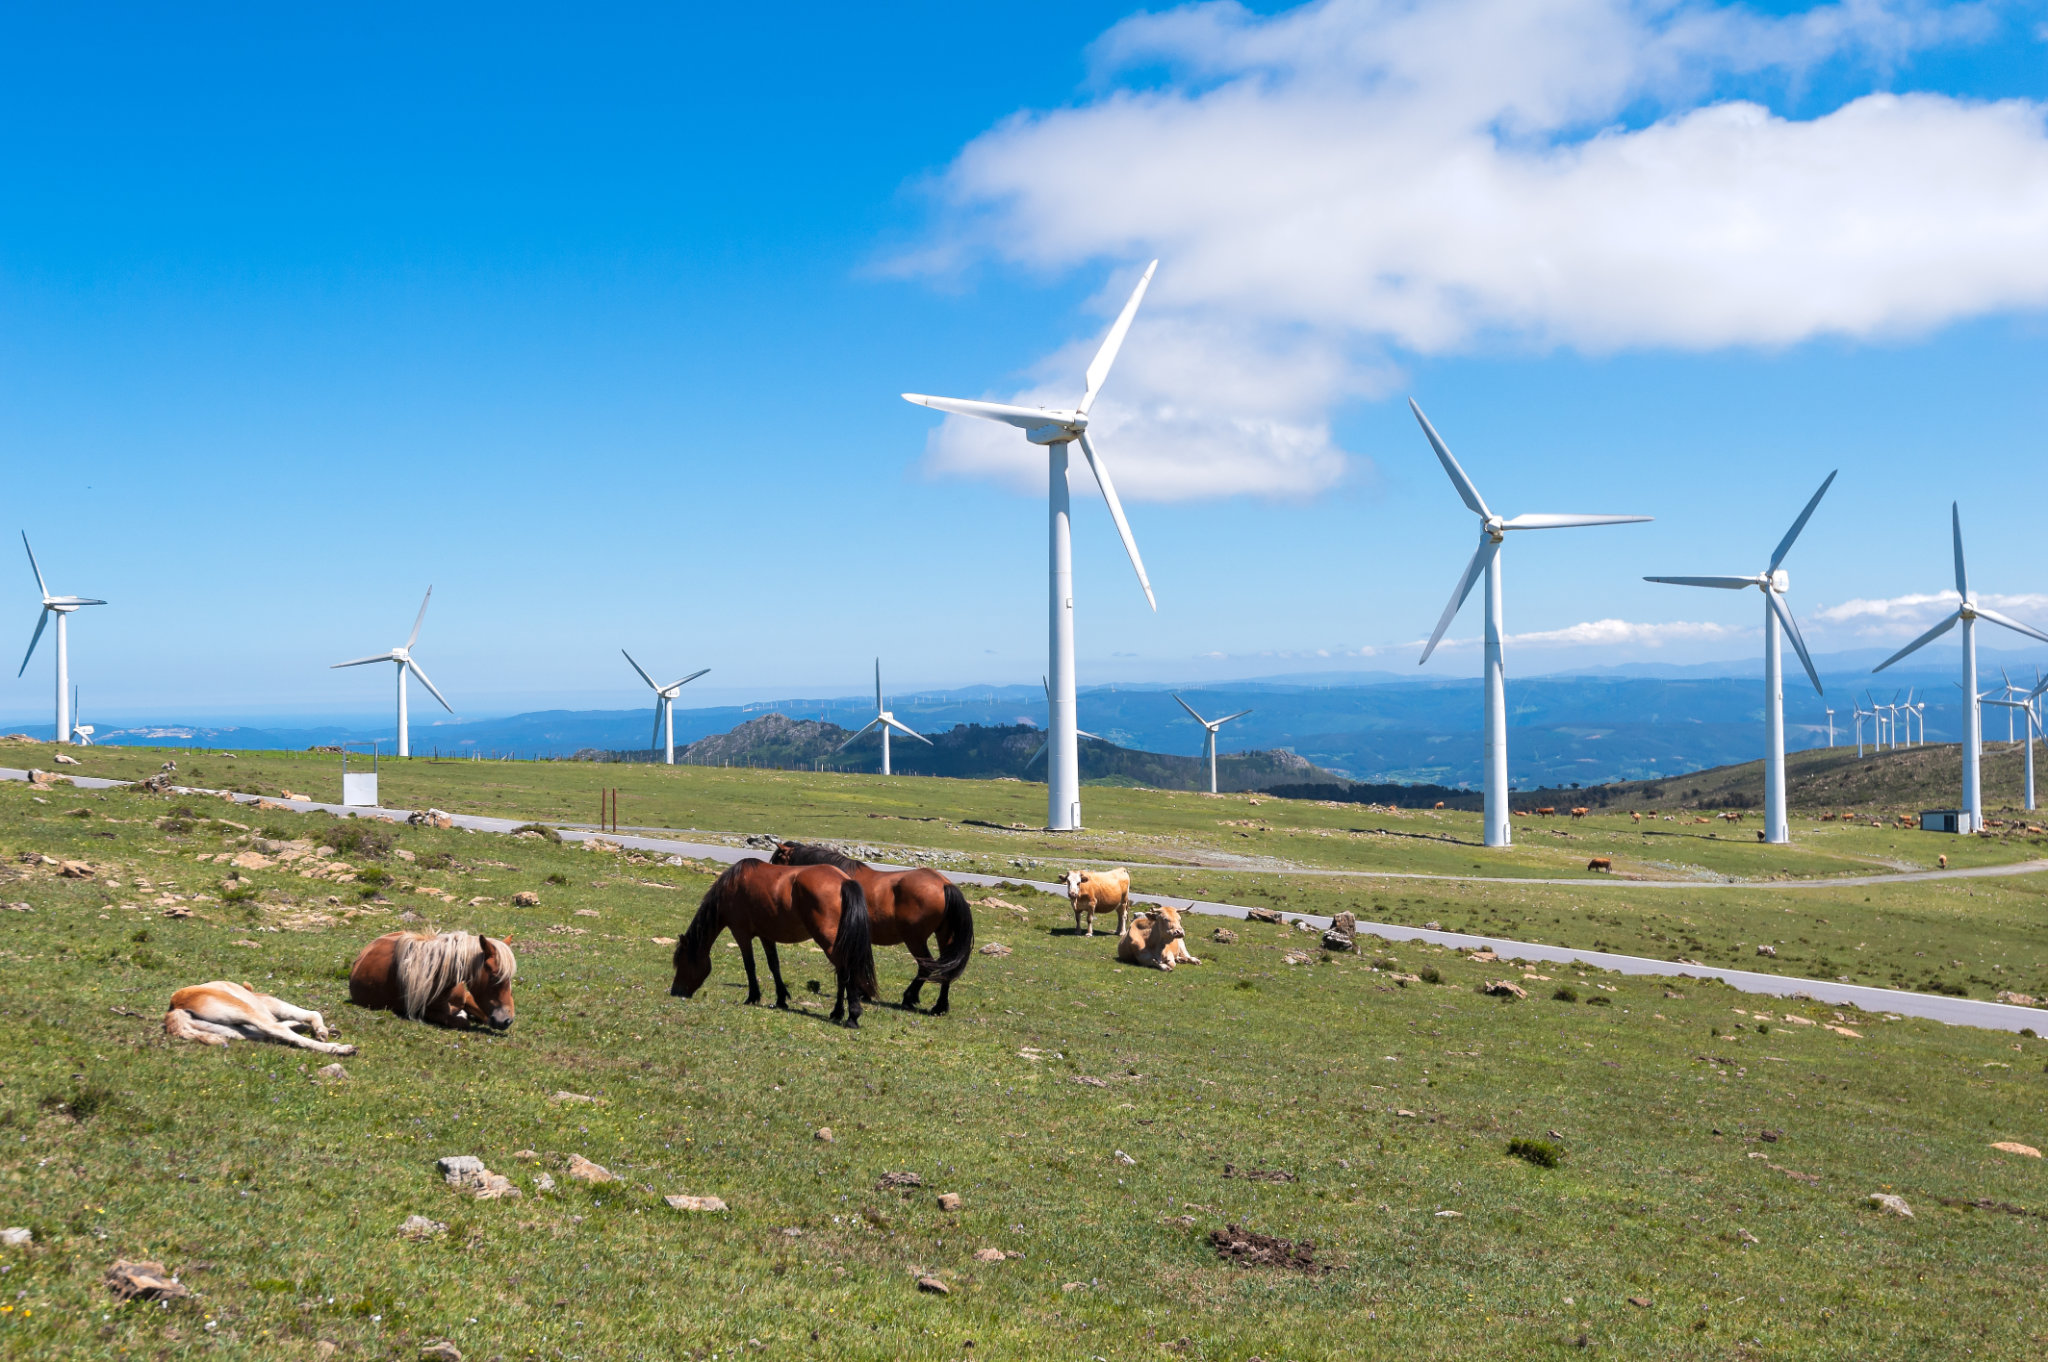 Paisaje con caballos, aerogeneradores para generación de energía eléctrica, cielo azul y nubes. Galicia, España.